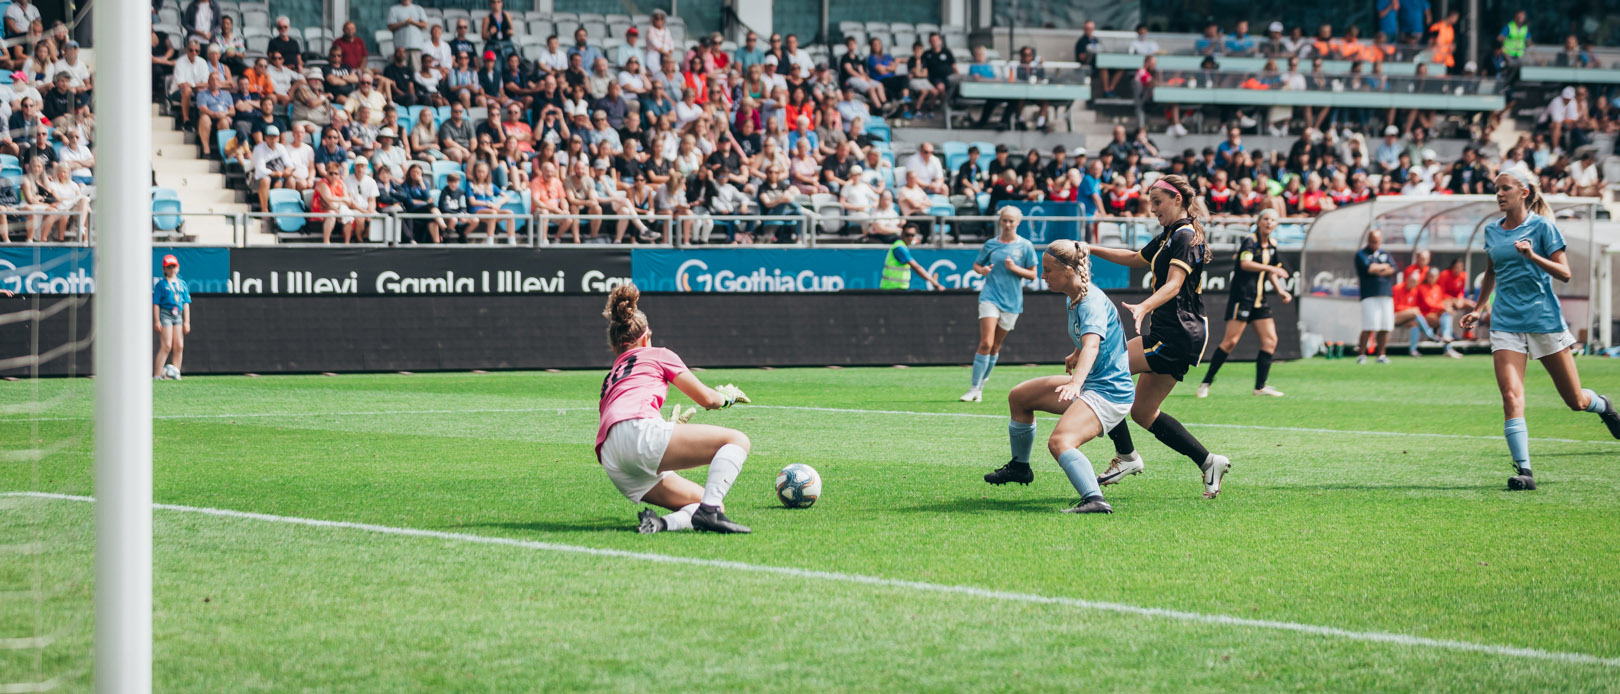 En målvakt slänger sig för att hindra att en fotboll hamnar i mål. I bakgrunden syns Gamla Ullevis läktare som är fulla.